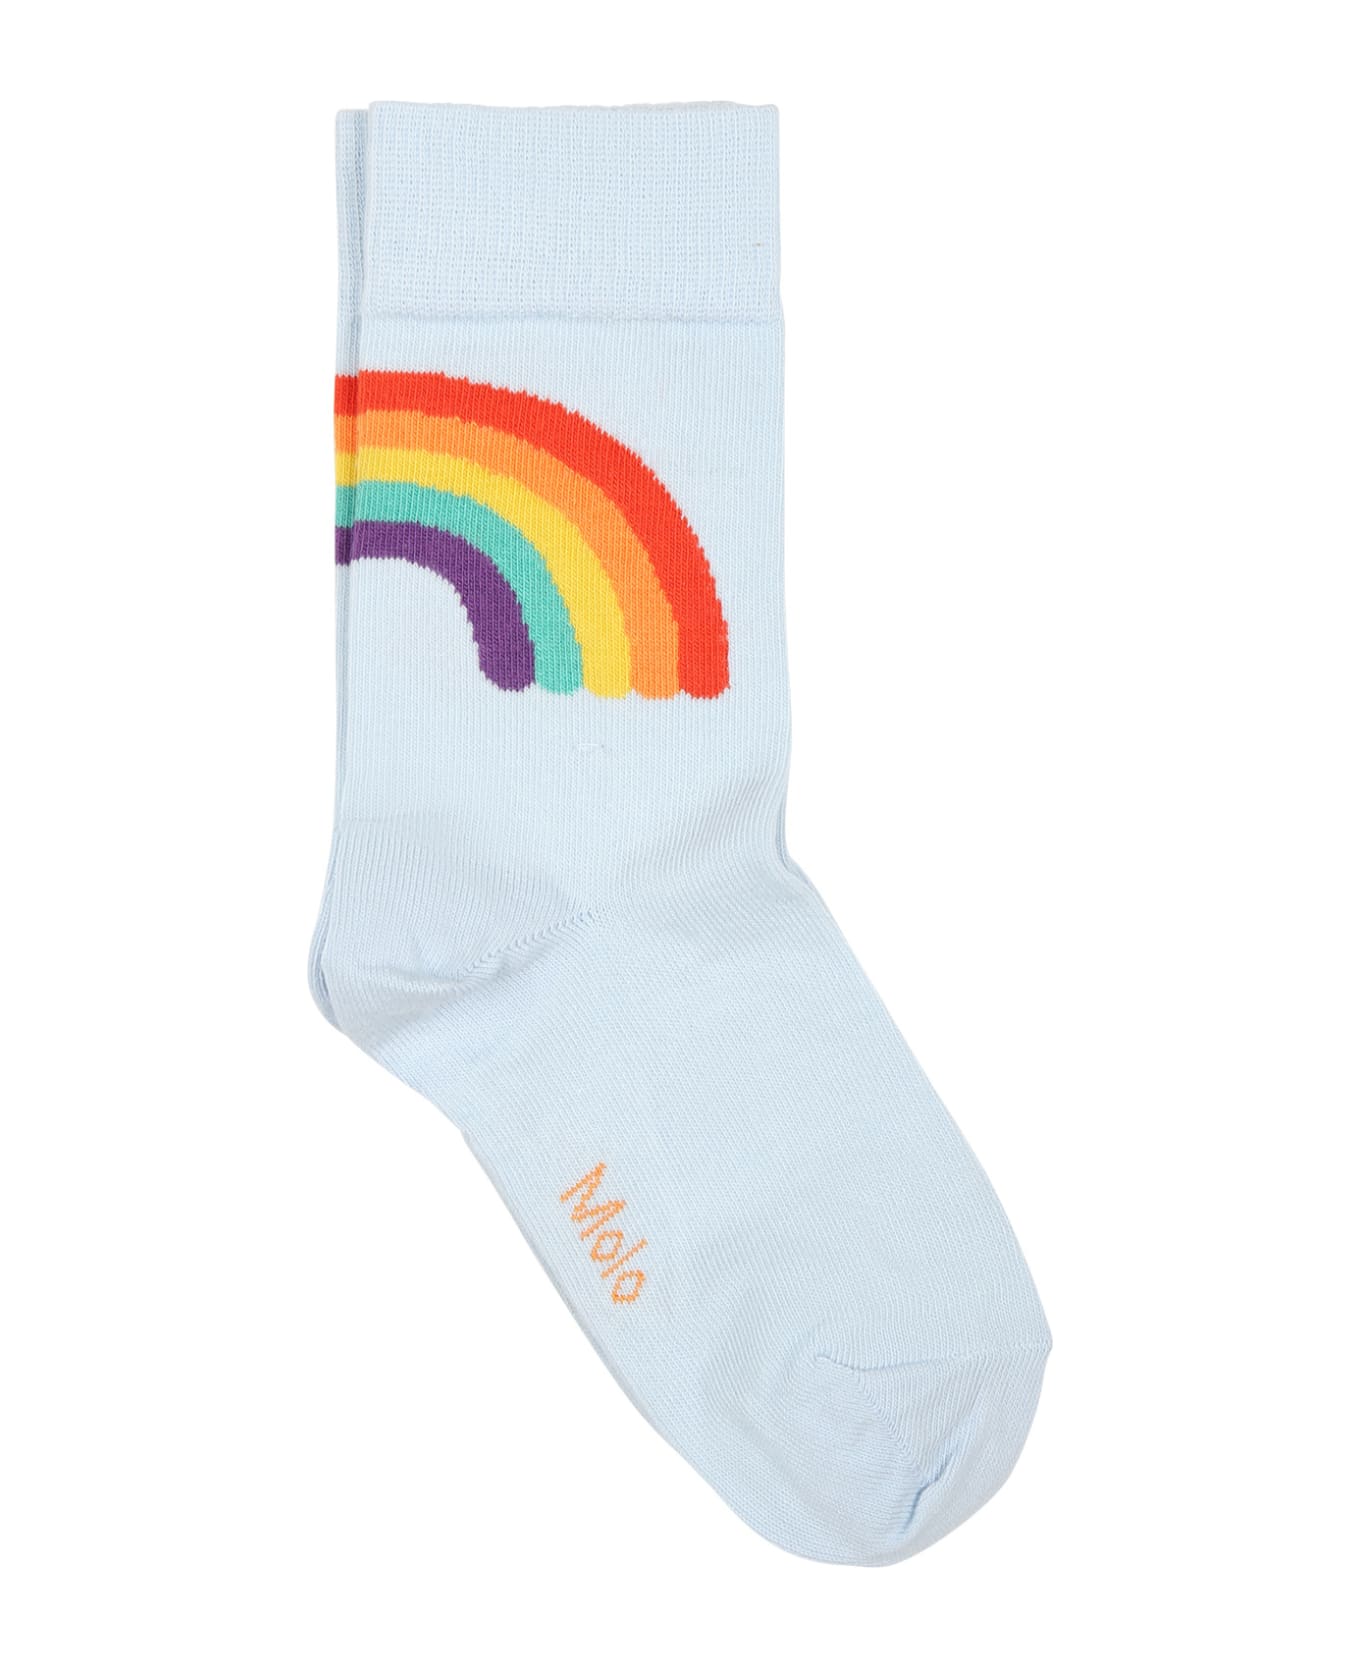 Molo Multicolor Socks Set For Kids - Multicolor シューズ